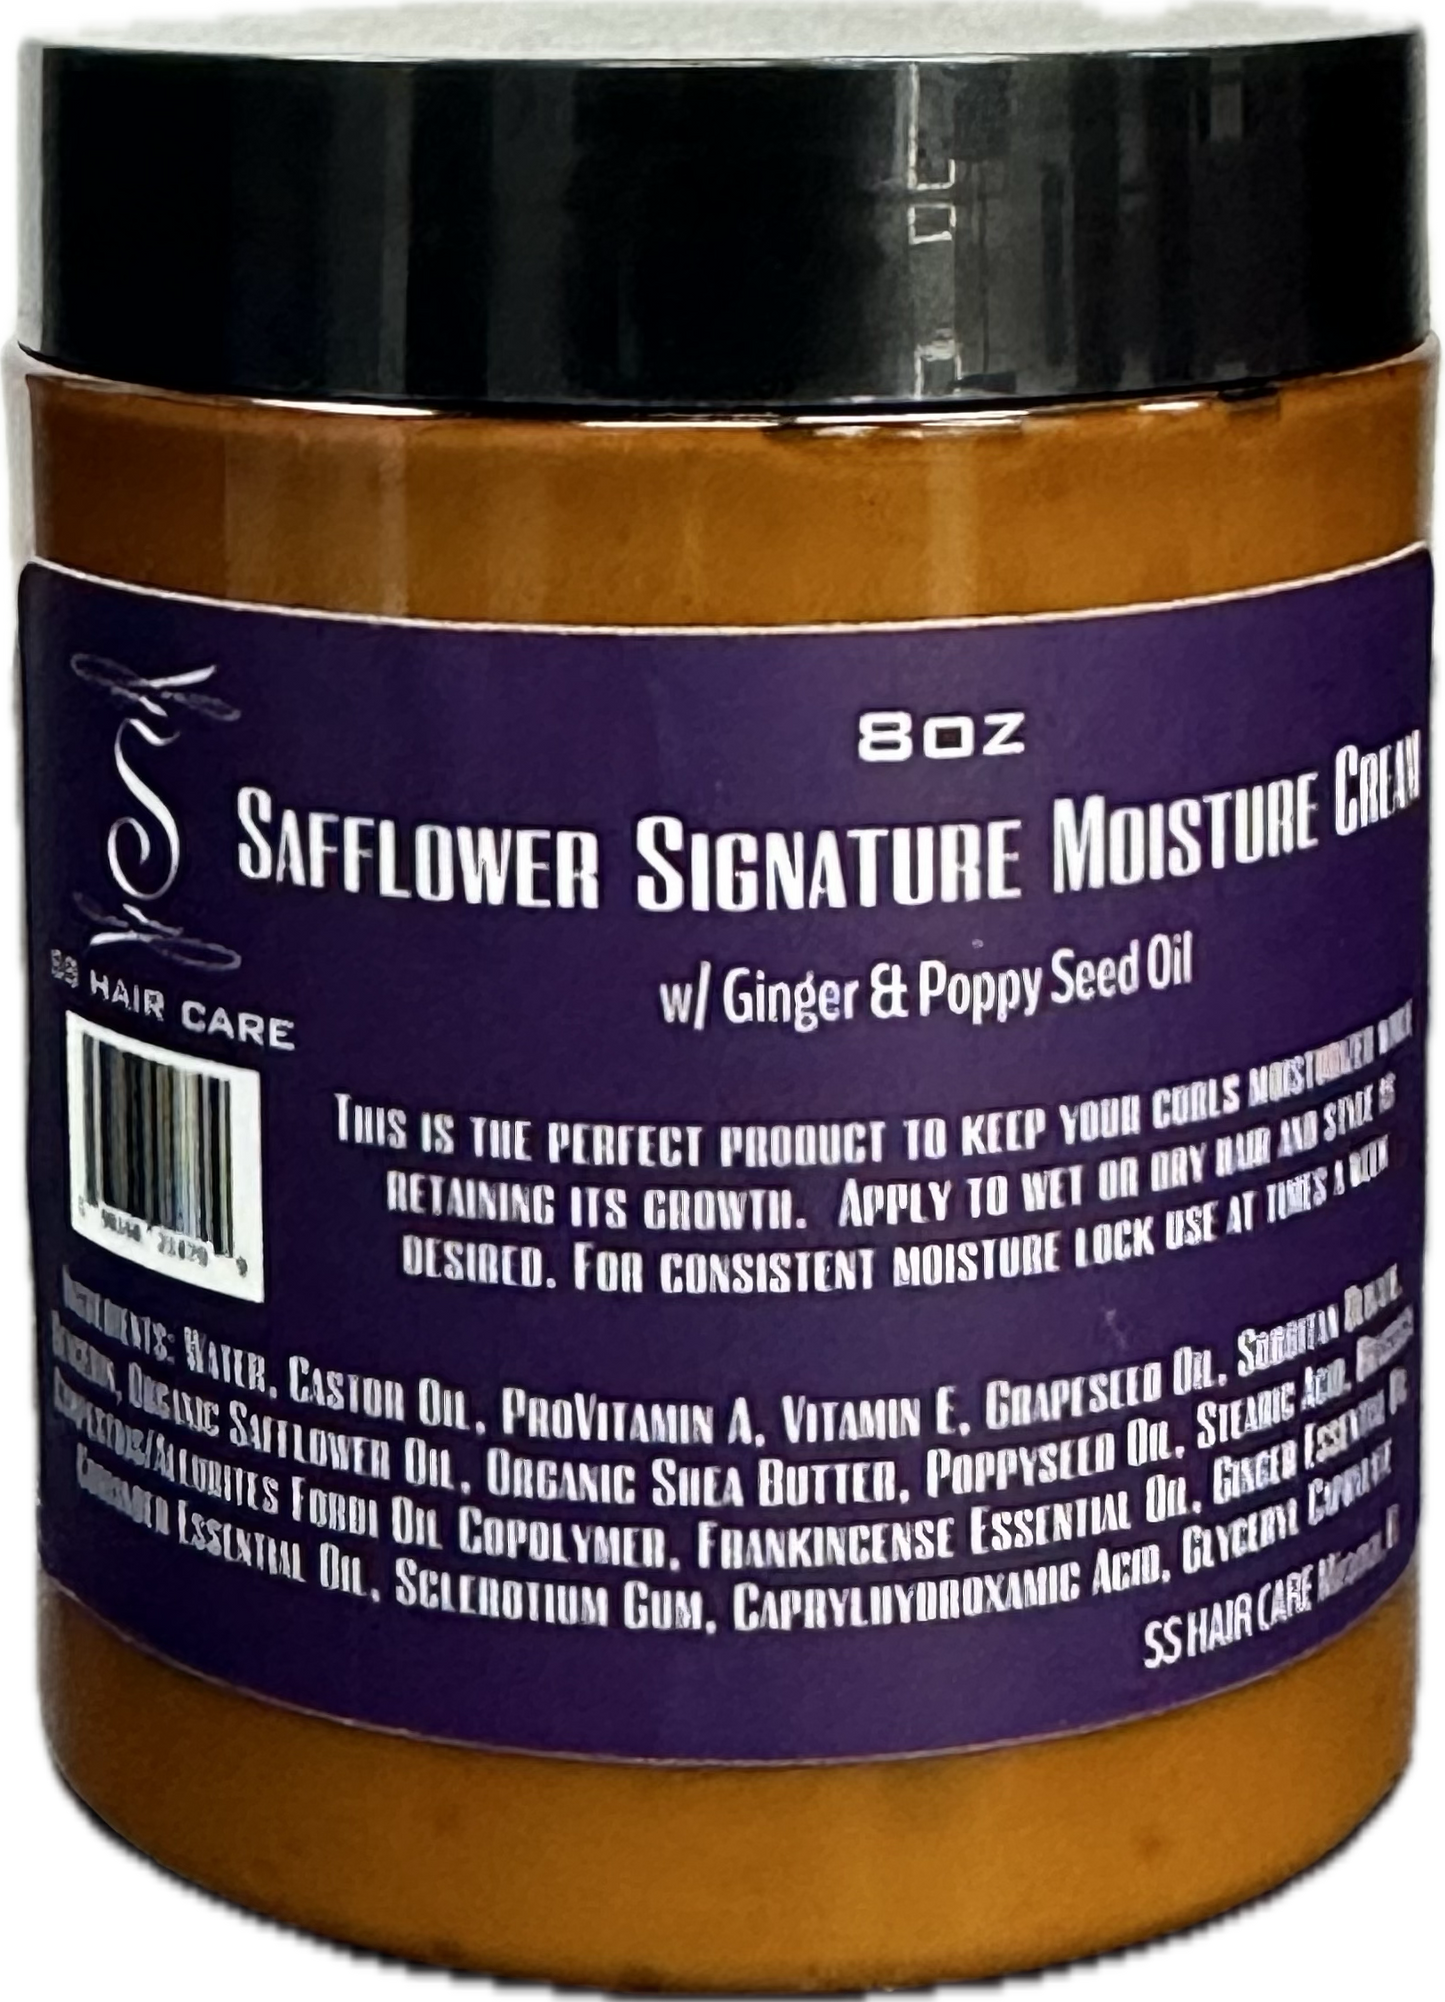 SS Hair Care Safflower Moisture Cream